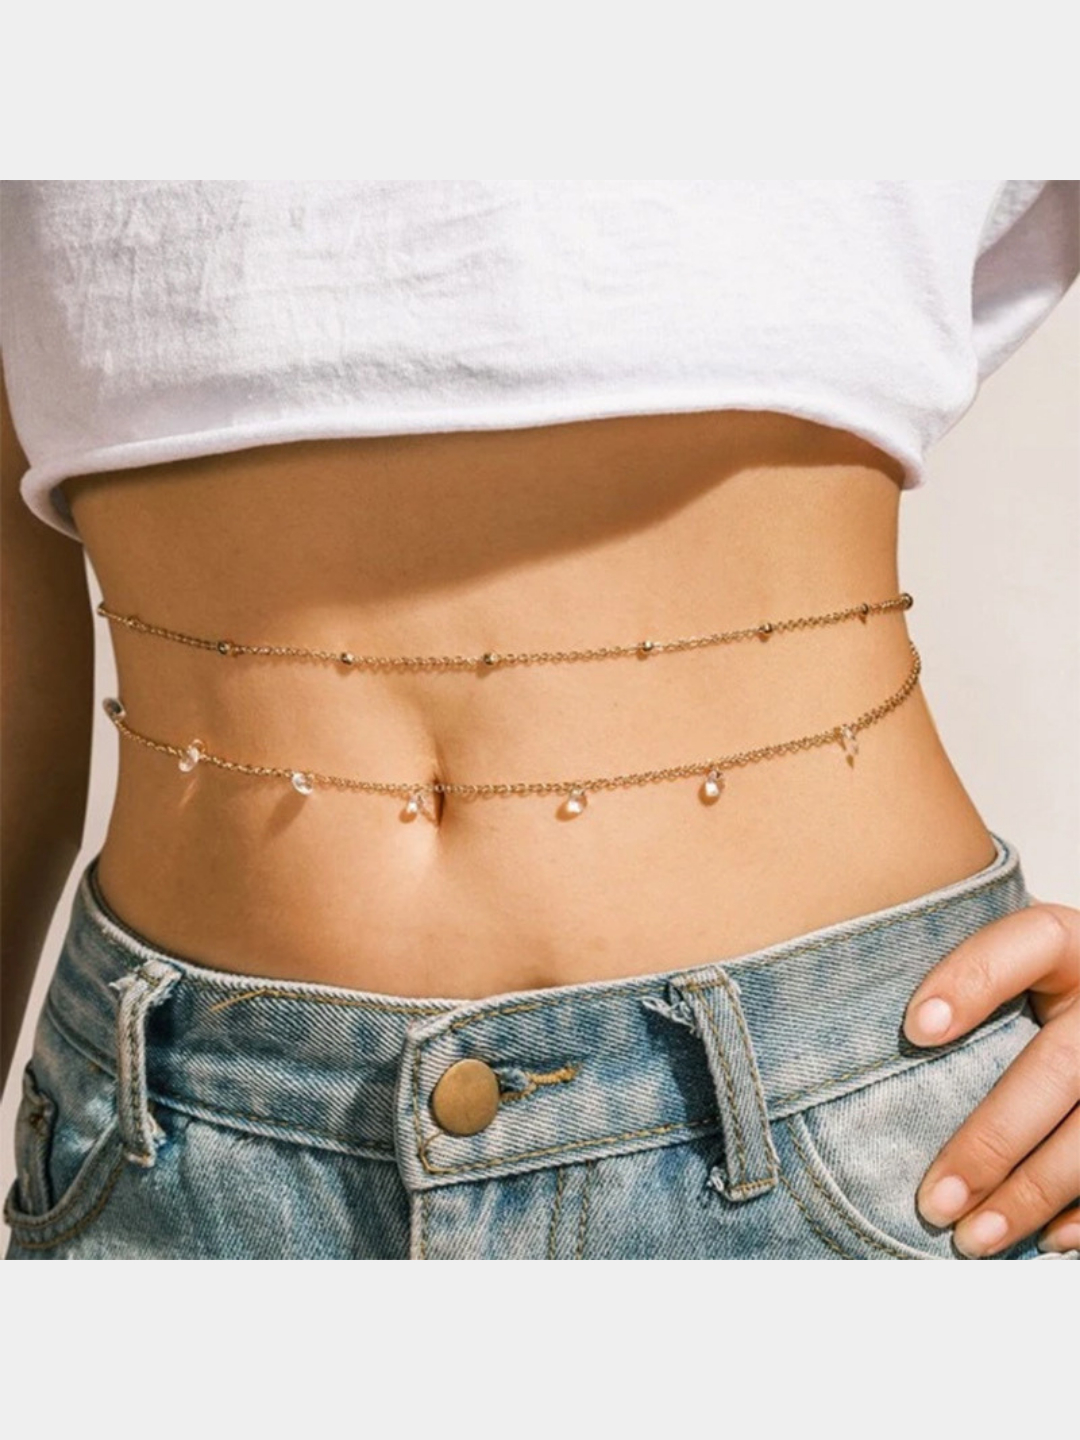 Ультрамодный belly chain: с чем и как носить главный летний тренд — цепочку на талии